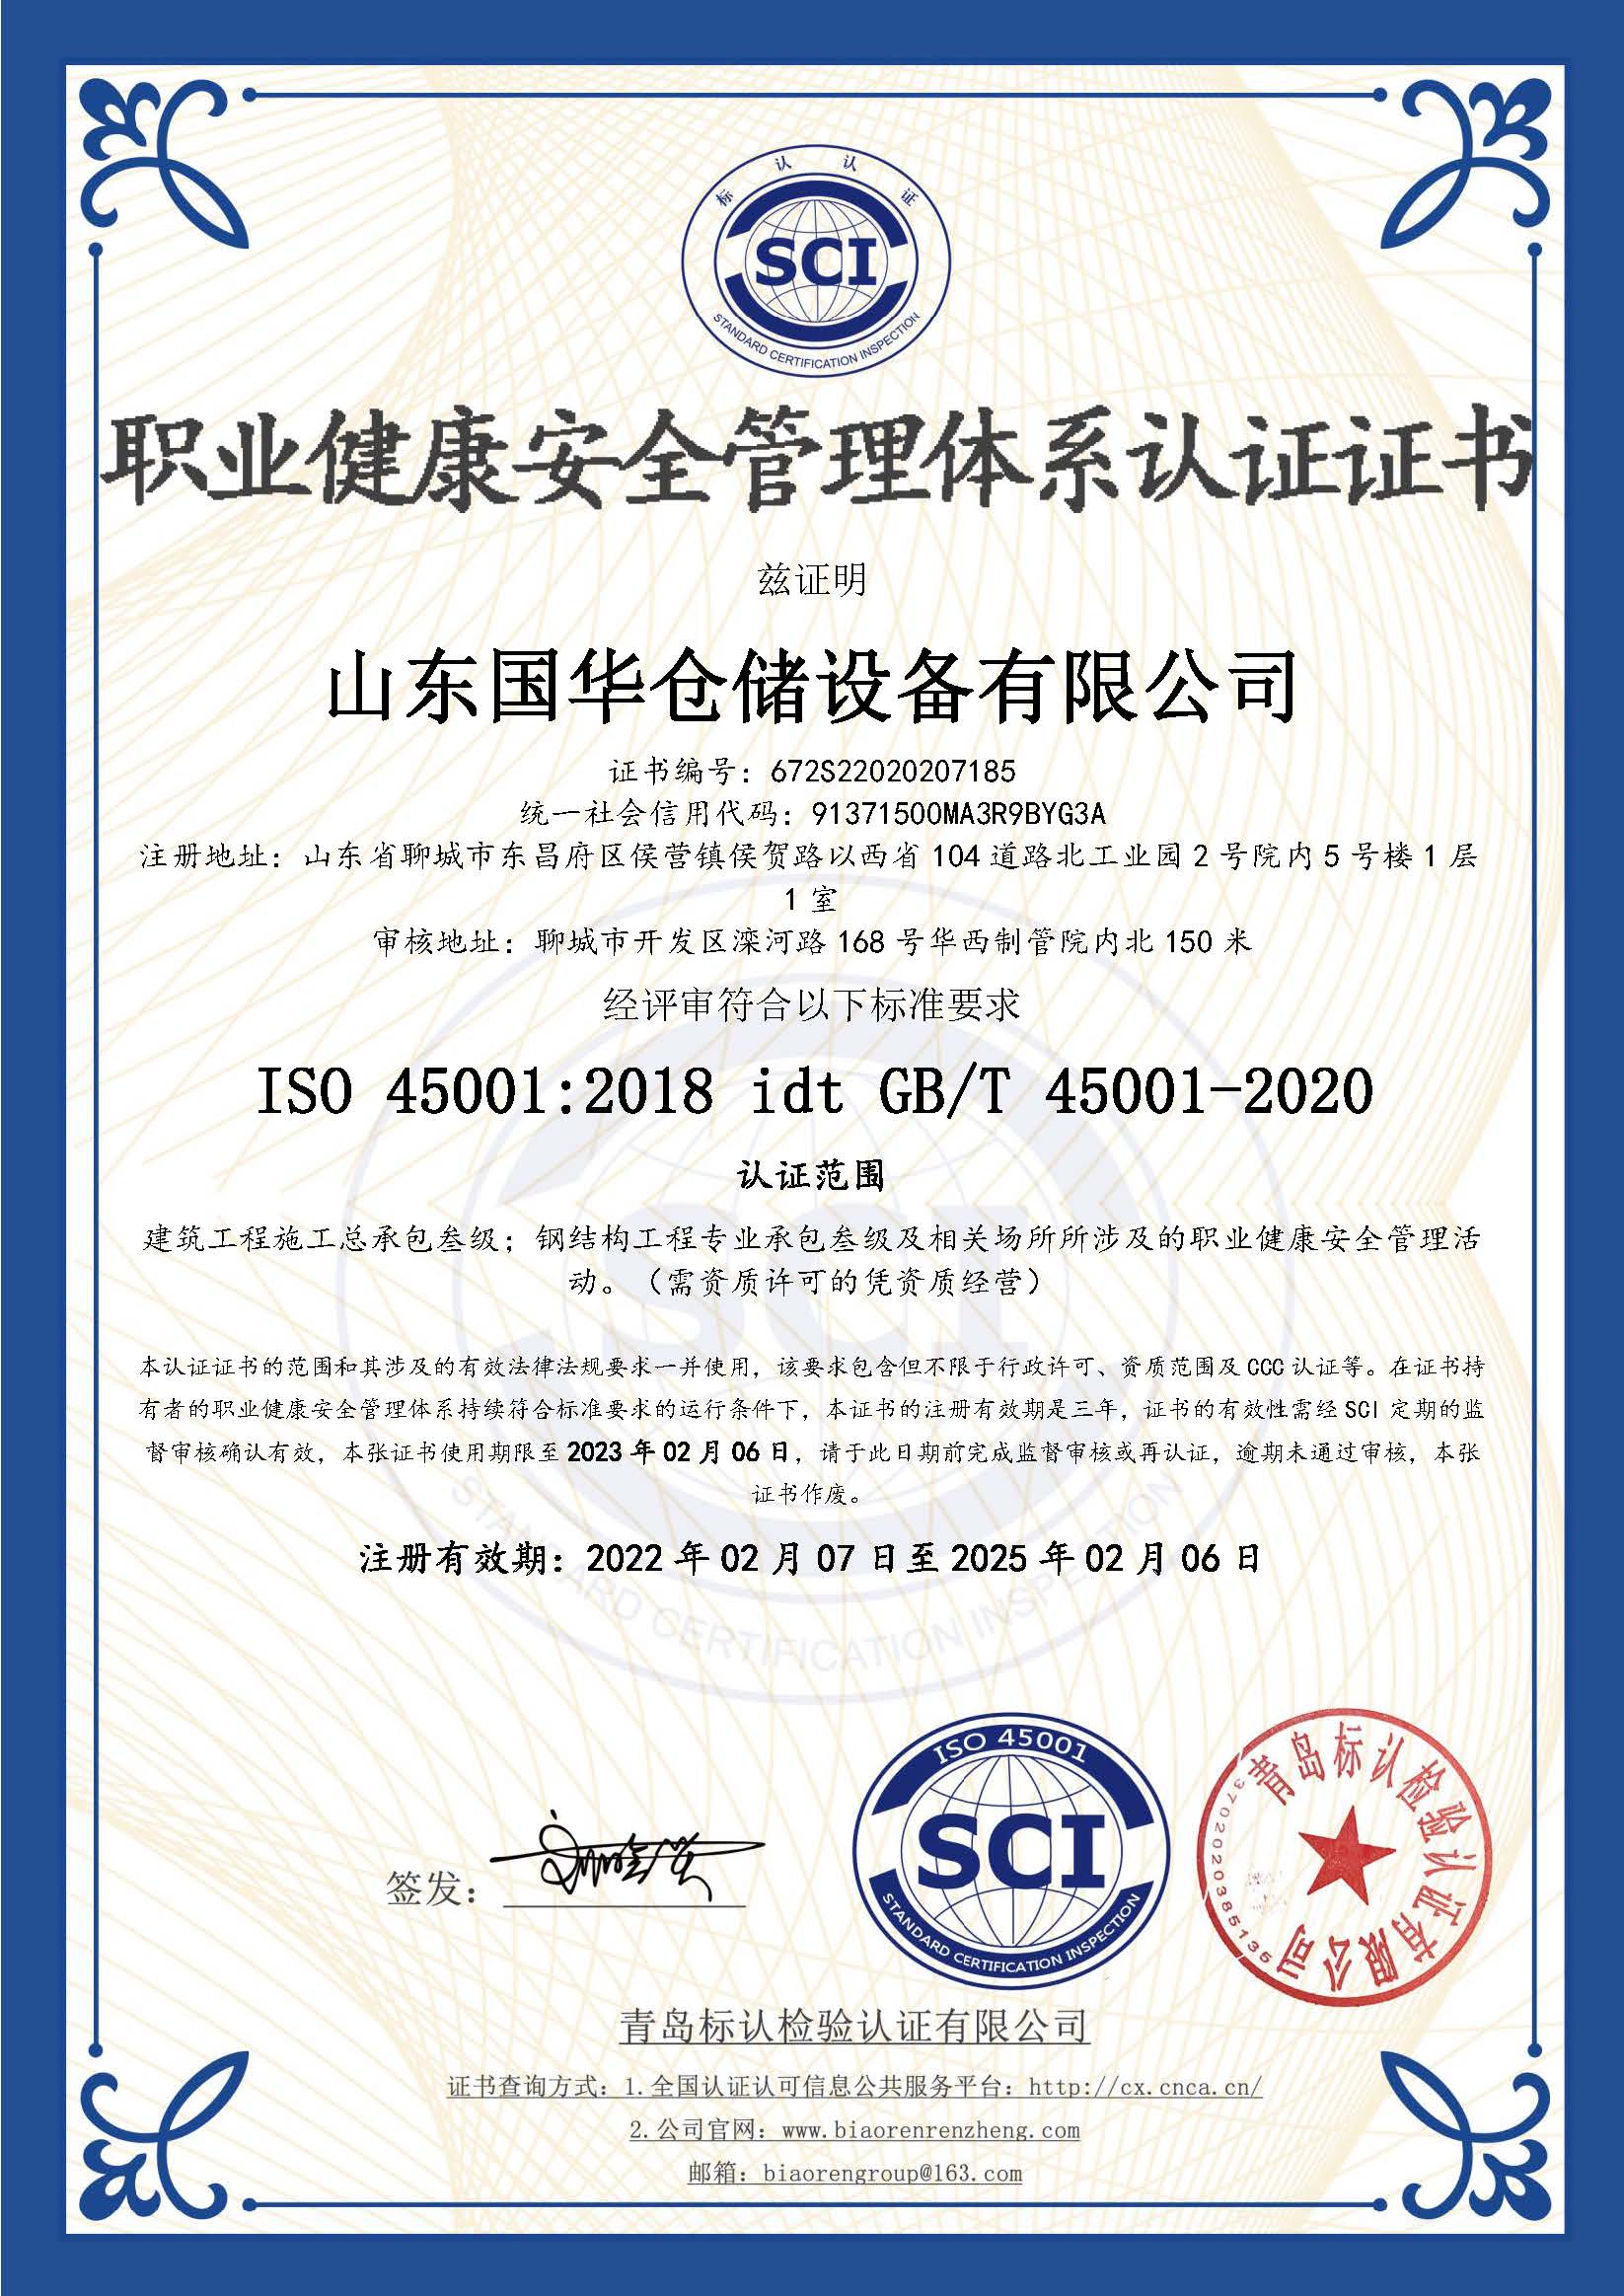 海南藏族钢板仓职业健康安全管理体系认证证书